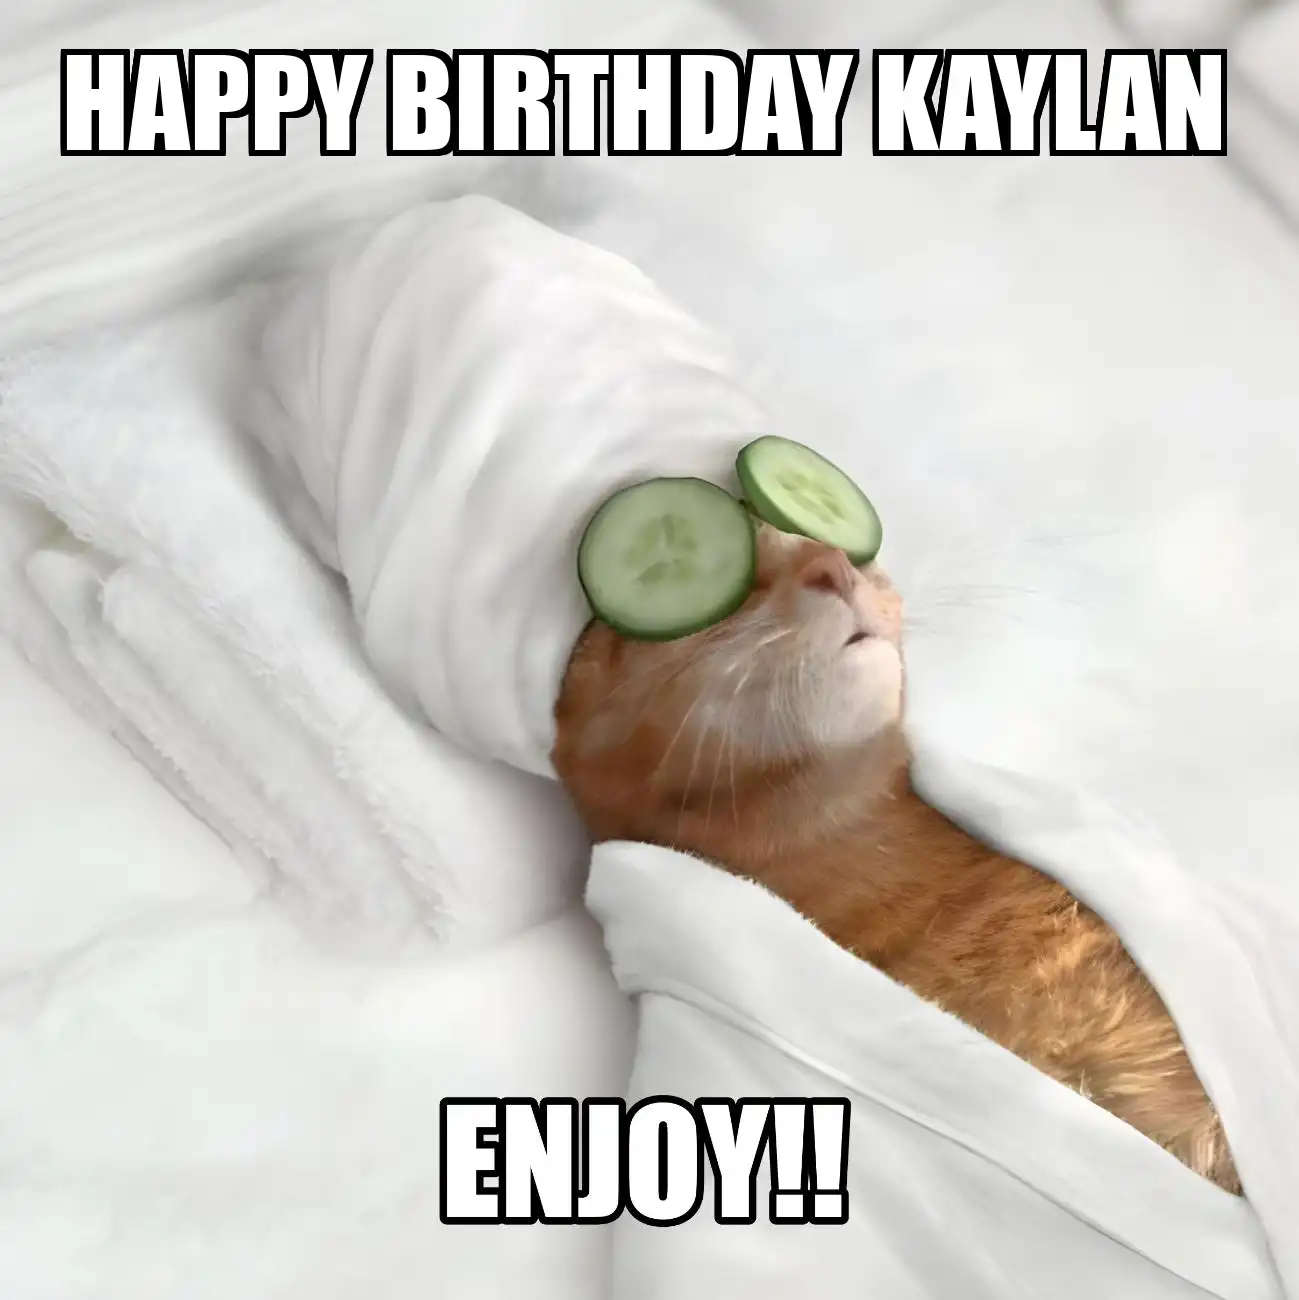 Happy Birthday Kaylan Enjoy Cat Meme